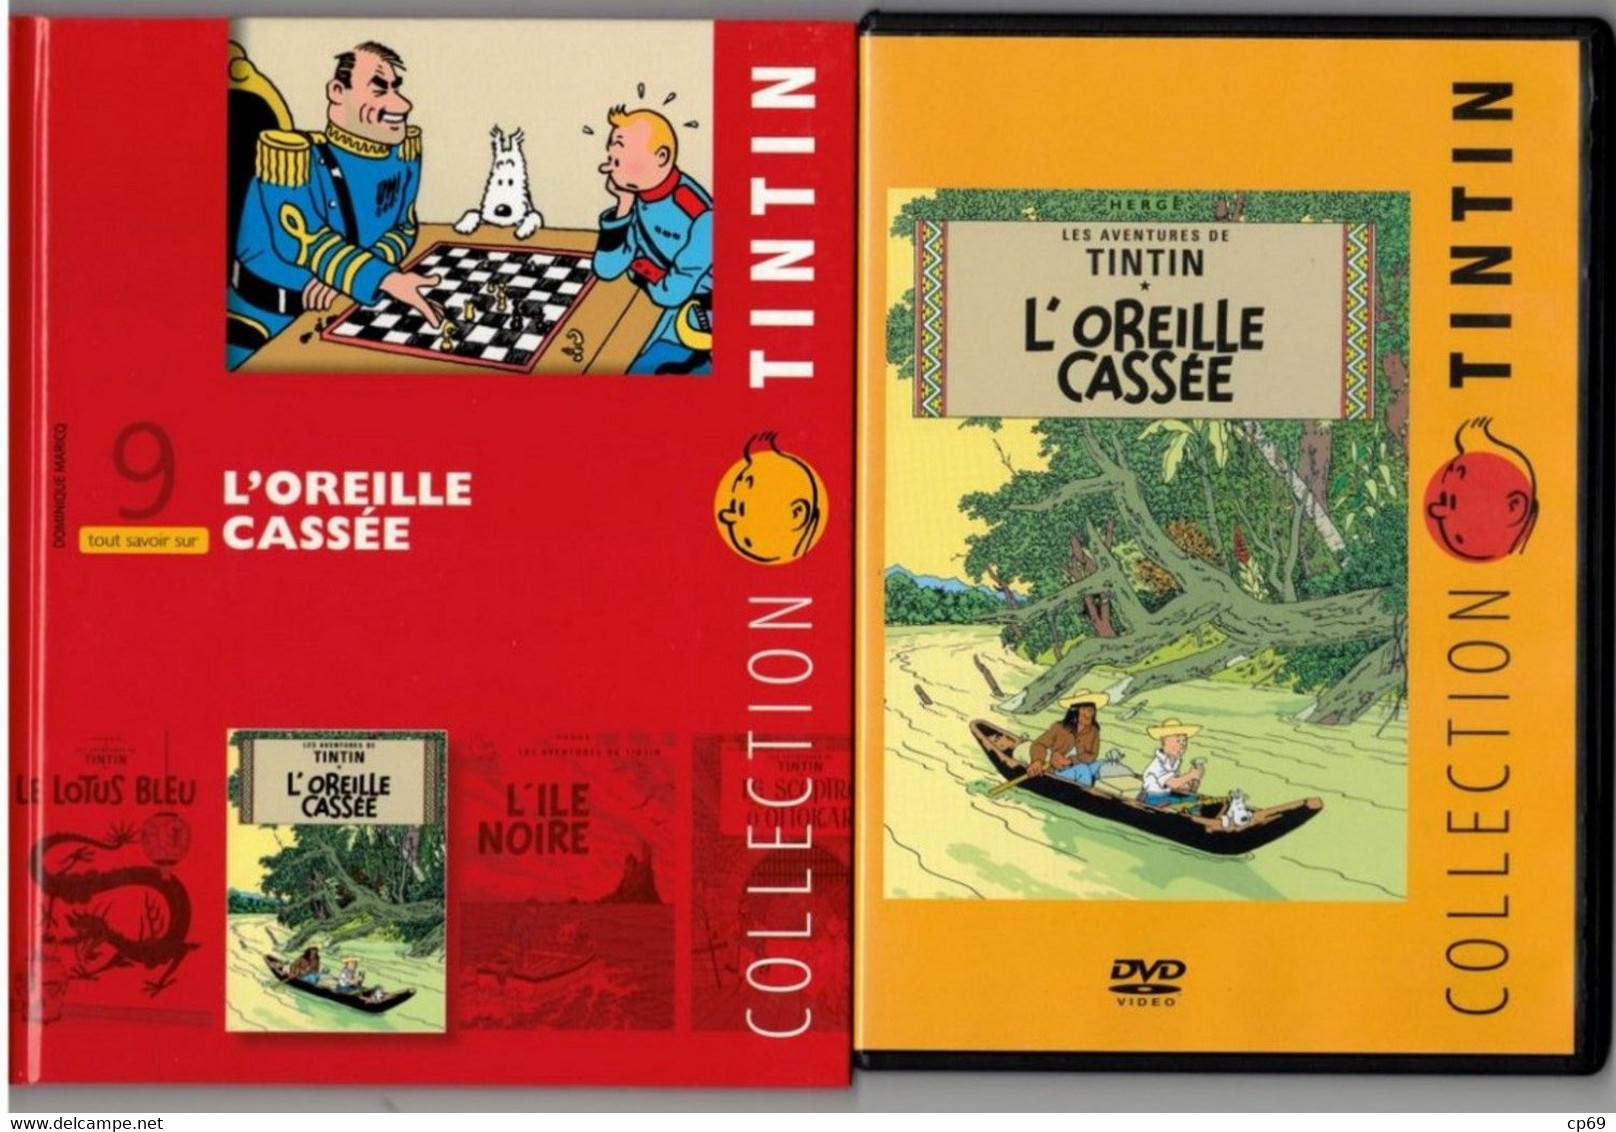 Tintin Hergé / Moulinsart 2010 Milou Chien Dog Cane L'Oreille Cassée N°9 DVD + Livret Explicatif En B.Etat - Animatie